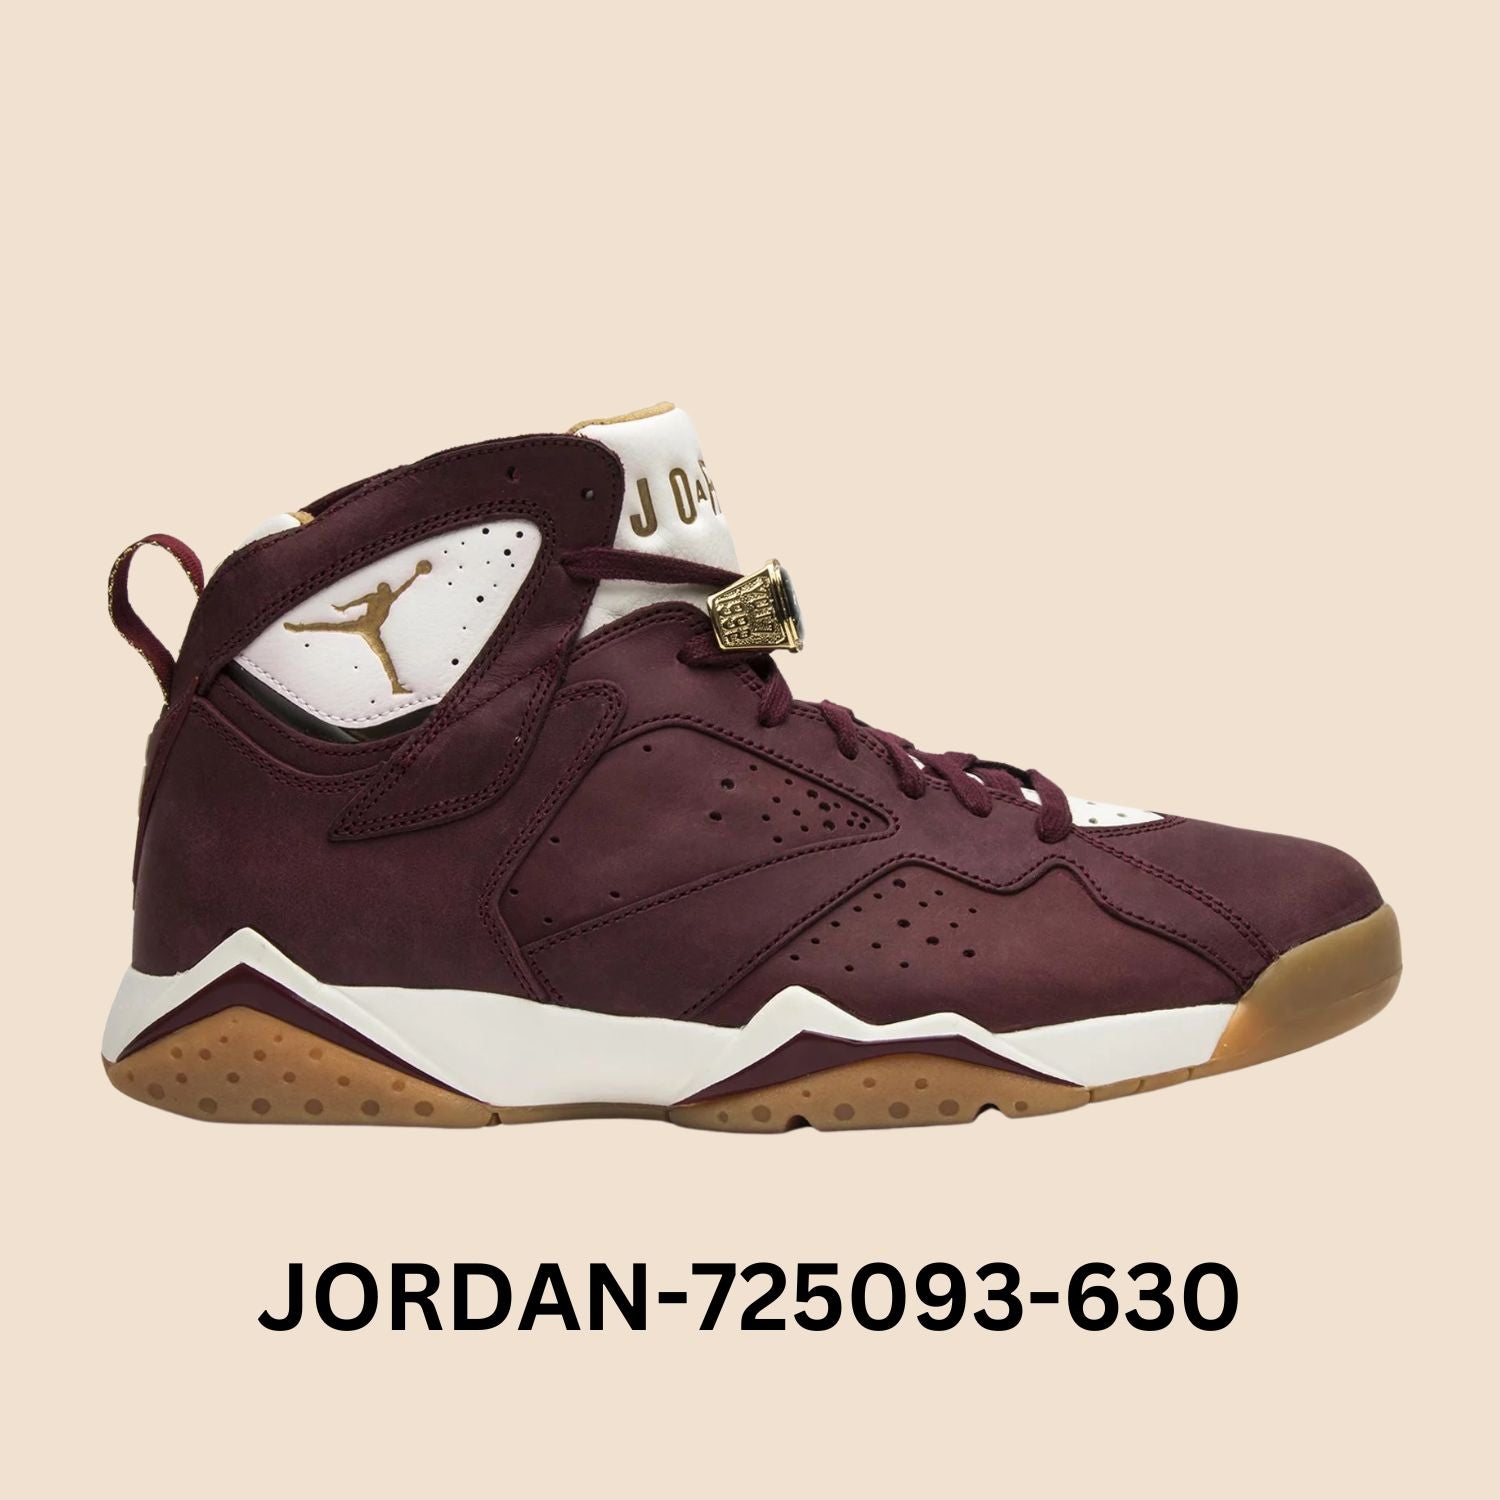 Air Jordan 7 Retro "Cigar" Style# 725093-630